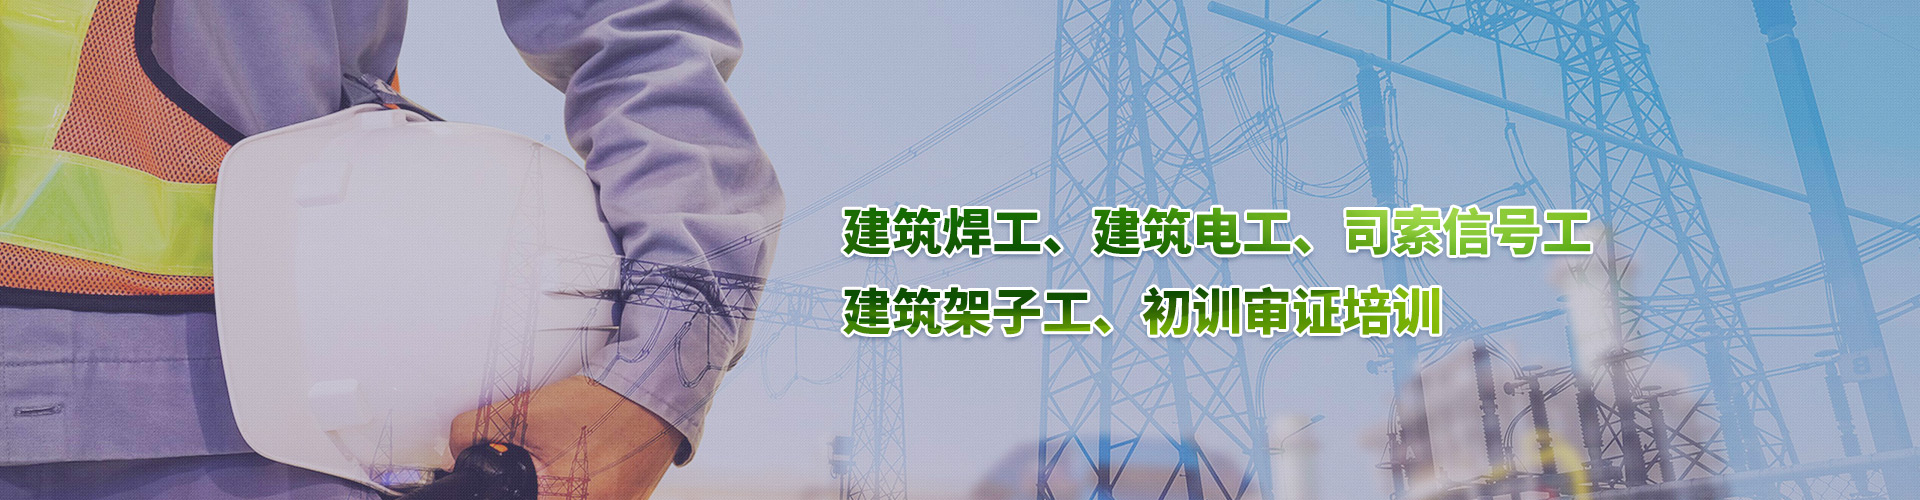 上海市司索信號工培訓怎么考 每月開班